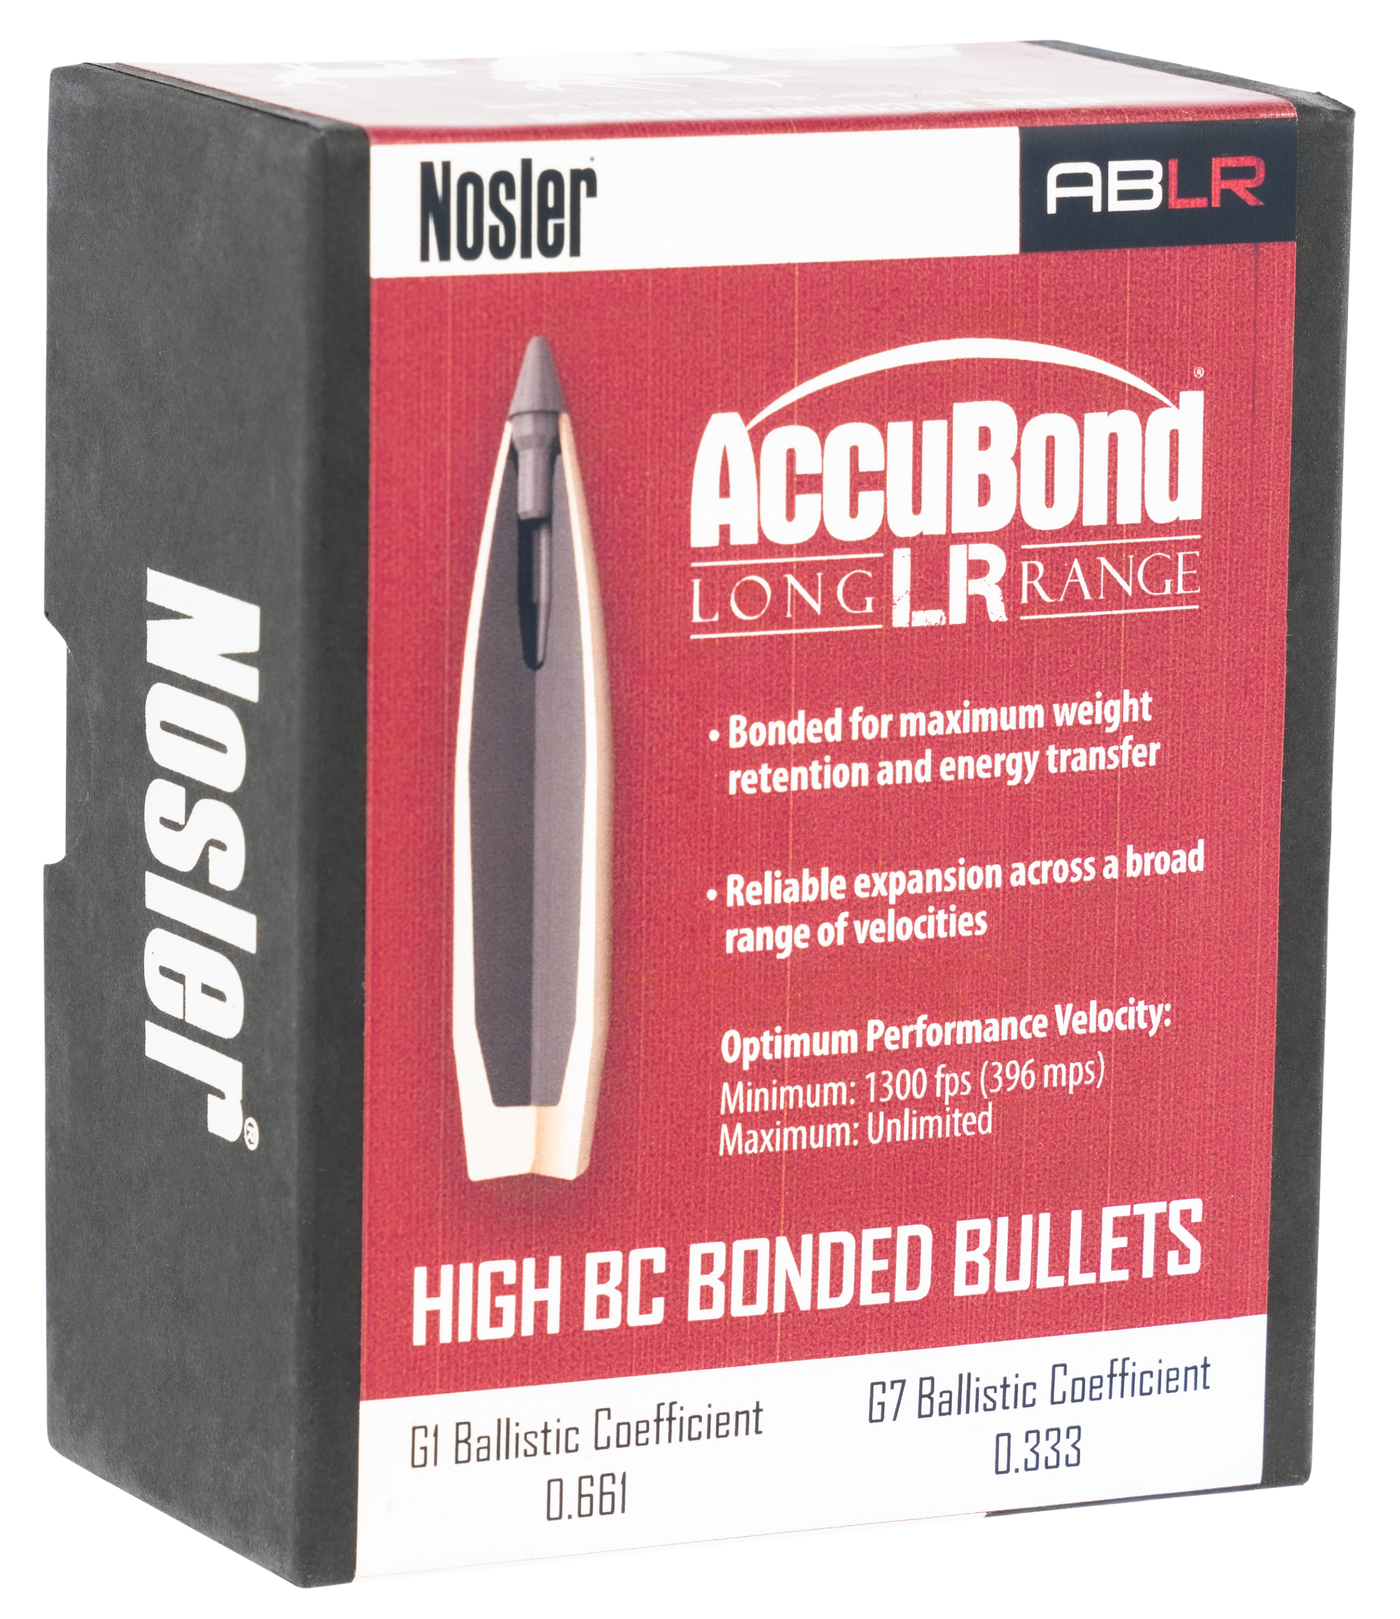 Nosler Accubond Long Range Bullets .30 Cal. 210 Gr. Spitzer Point 100 Pk.